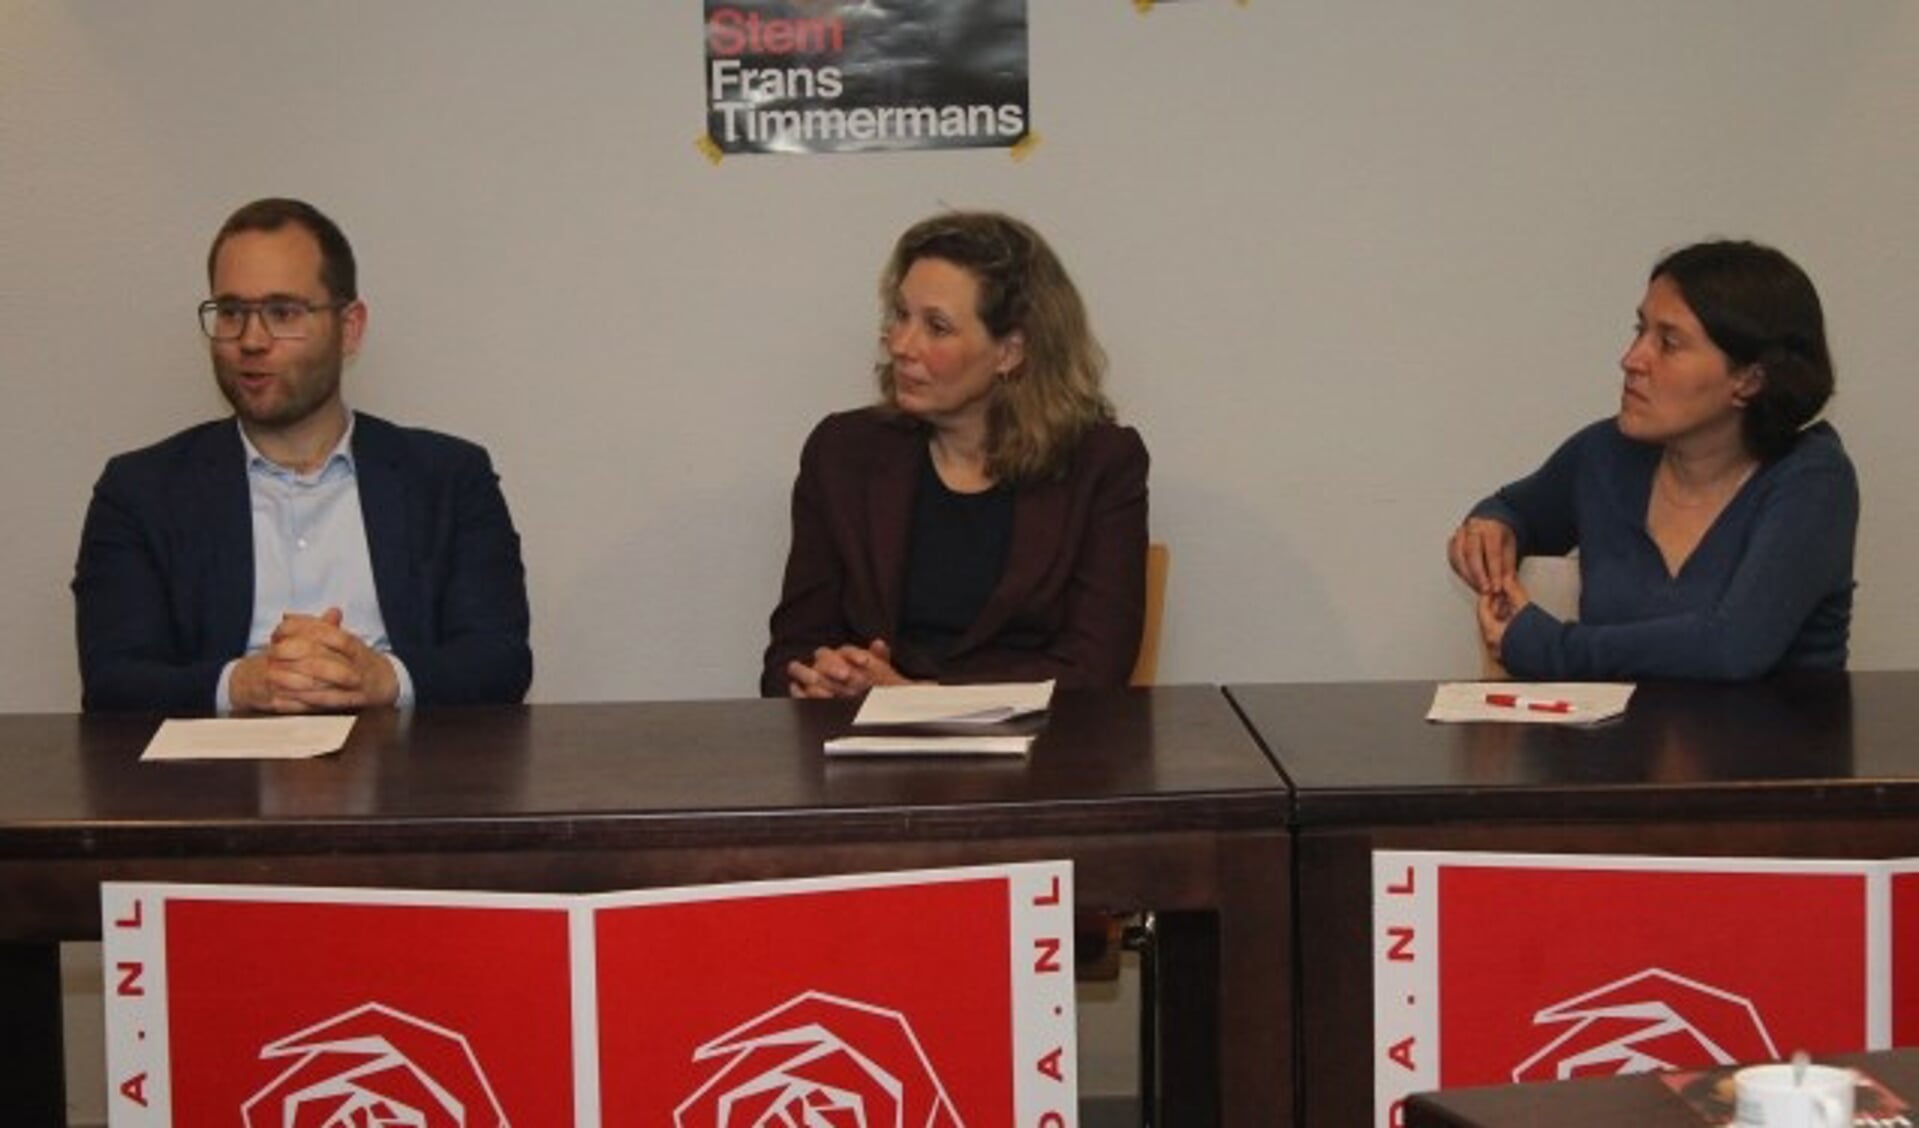 Europarlementariër Kati Piri (geheel rechts) was ook van de partij bij het debat in Lansingerland.